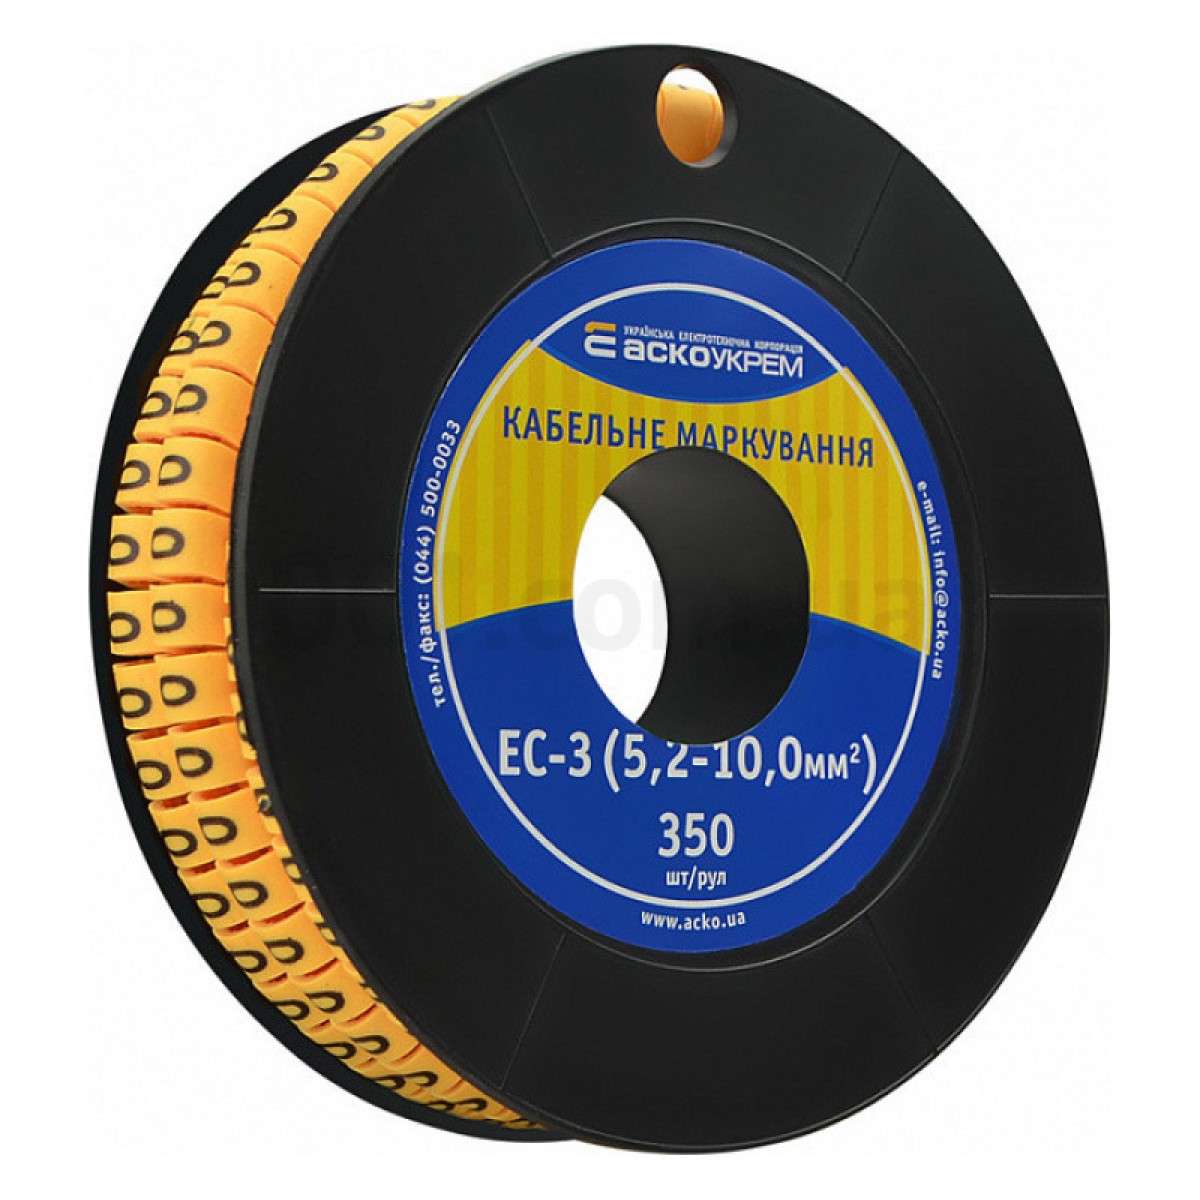 Маркування ЕС-3 для кабелю 5,2-10,0 мм² символ «0» (рулон 250 шт.), АСКО-УКРЕМ 98_98.jpg - фото 1